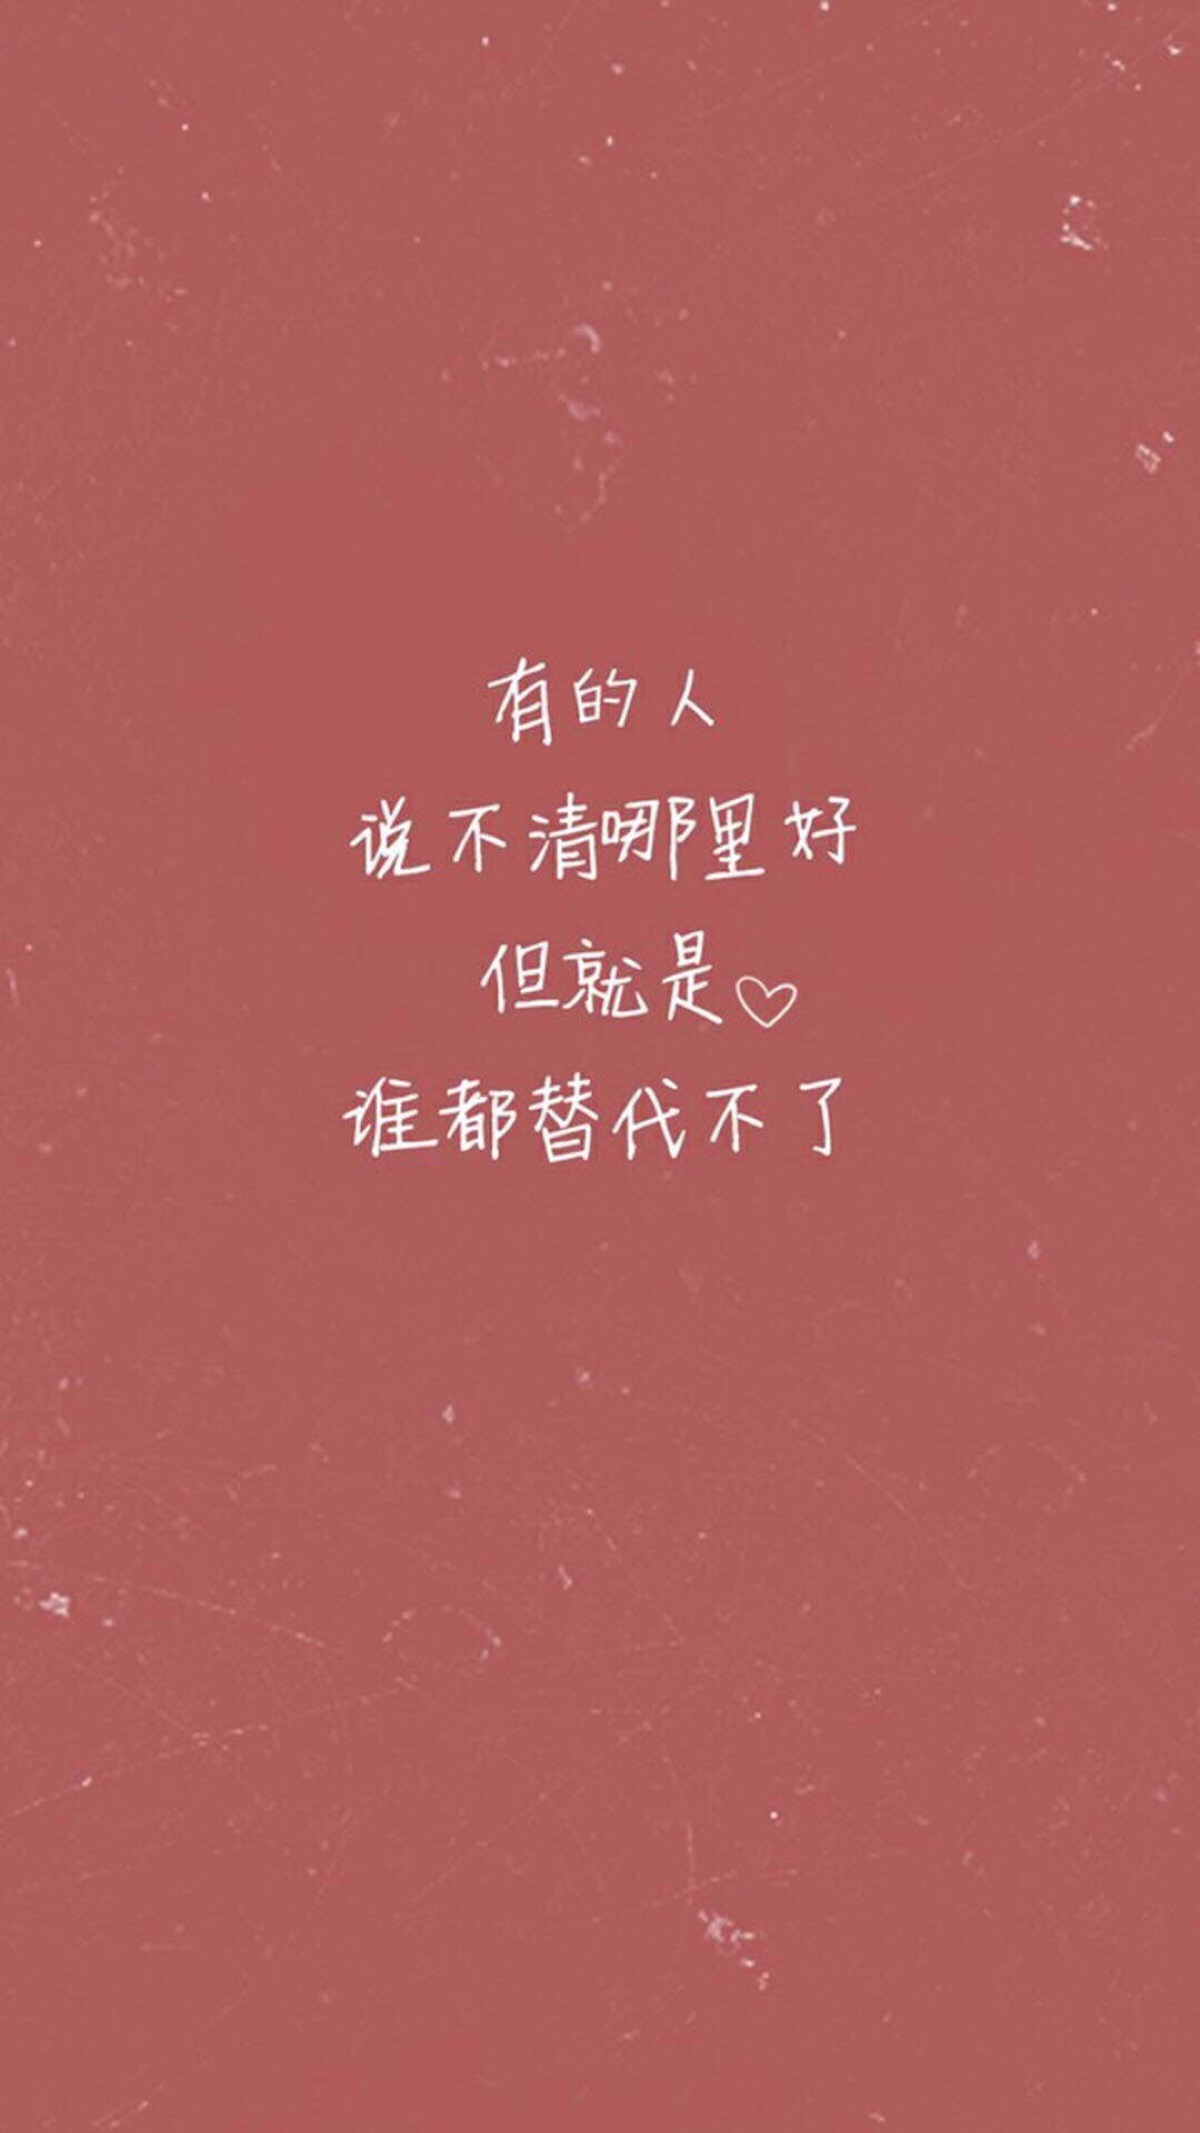 手机壁纸#小清新"文艺"告白"温暖"情话"台词"语录"青春"情绪"爱情"